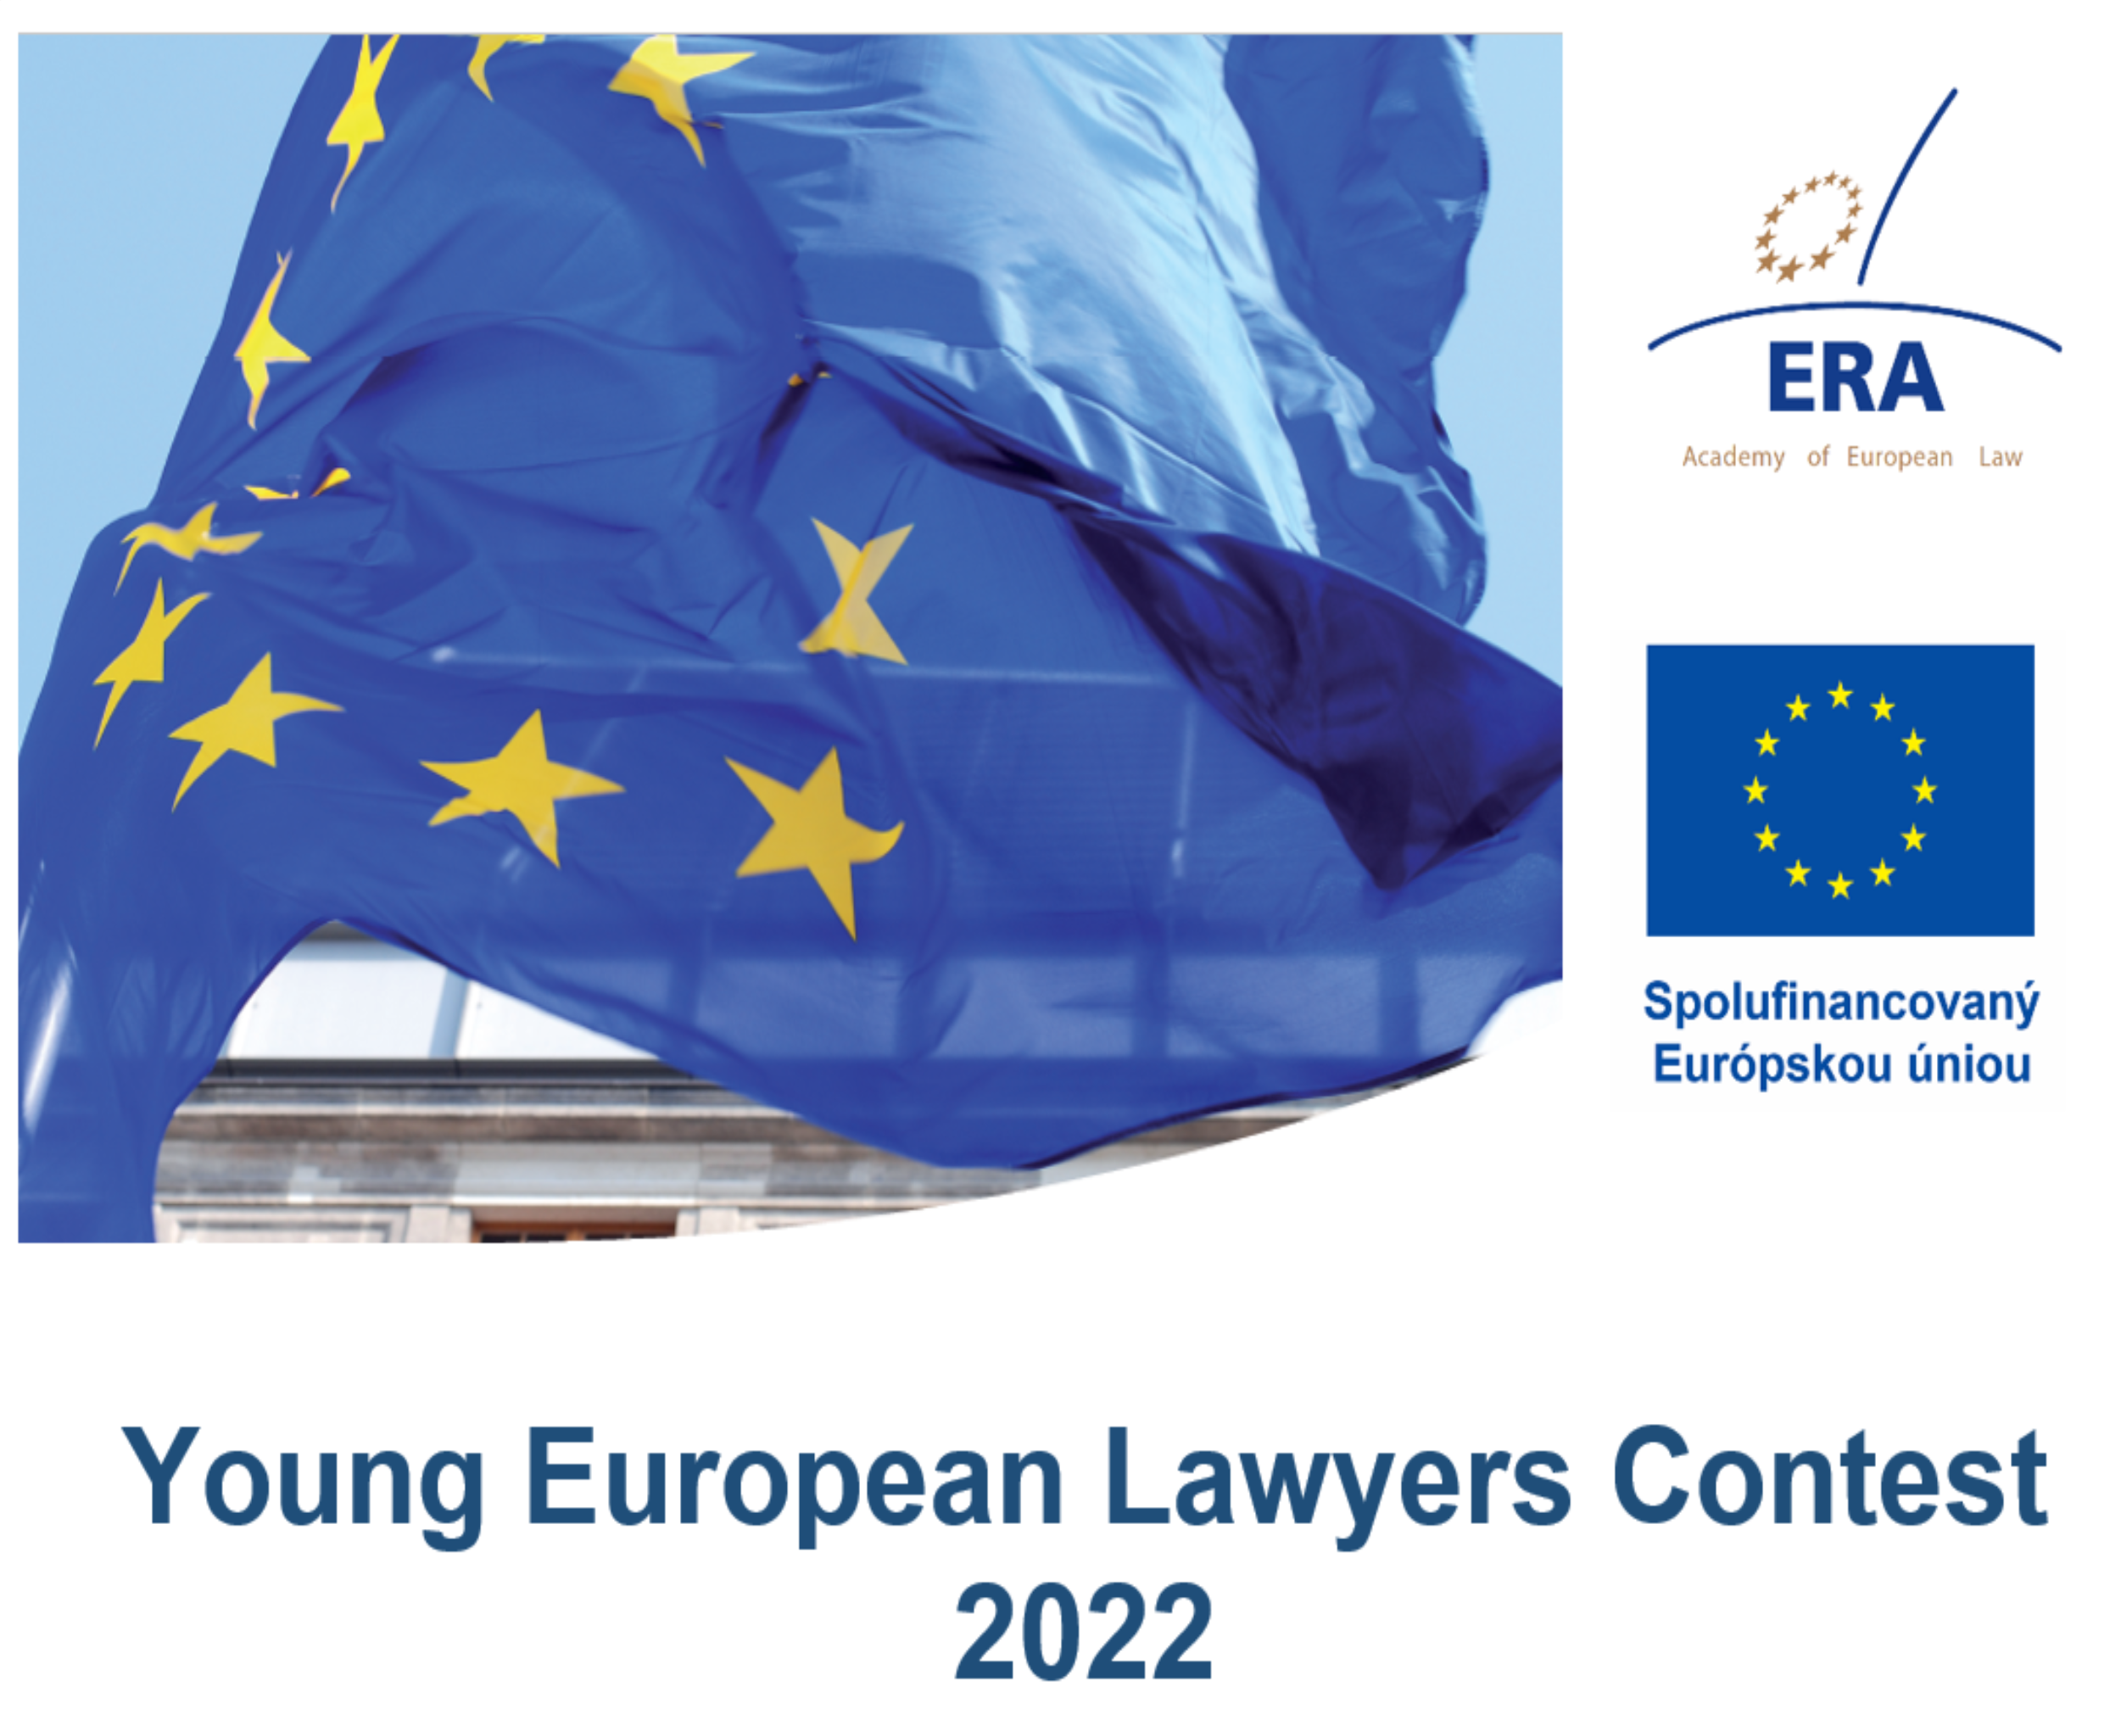 SÚŤAŽ pre mladých advokátov a koncipientov zameraná na aplikáciu práva EÚ